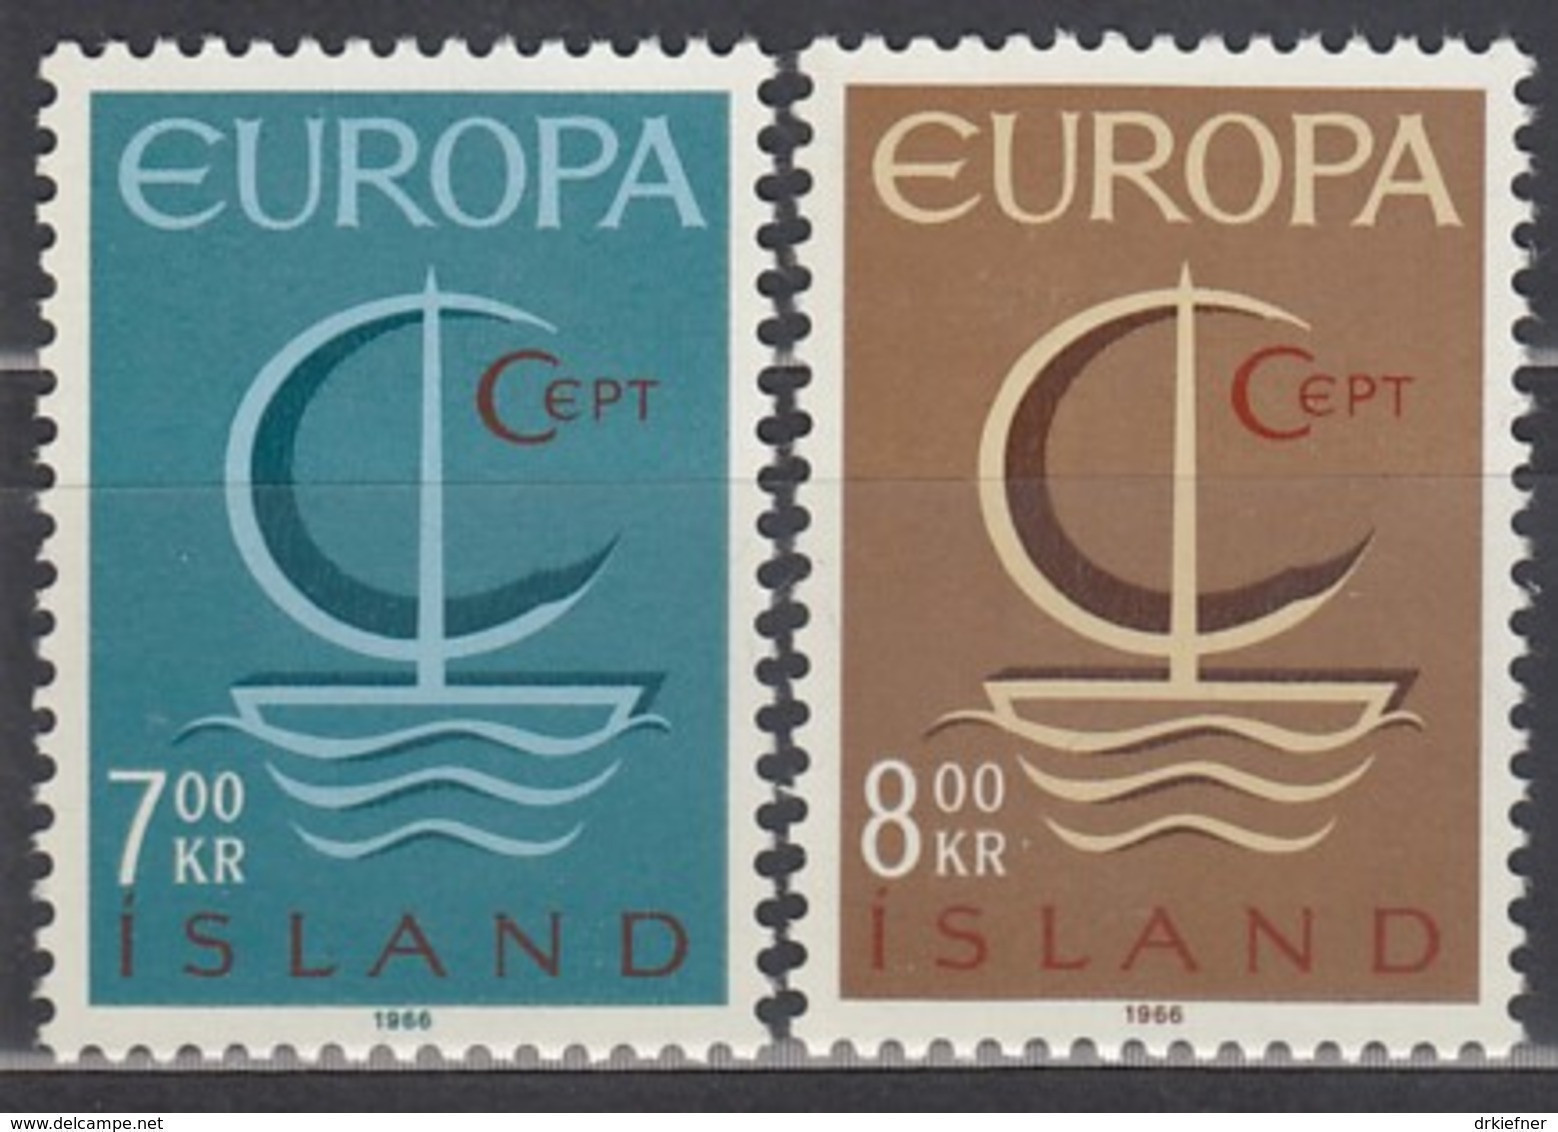 ISLAND  404-405, Postfrisch **, Europa CEPT 1966 - Neufs